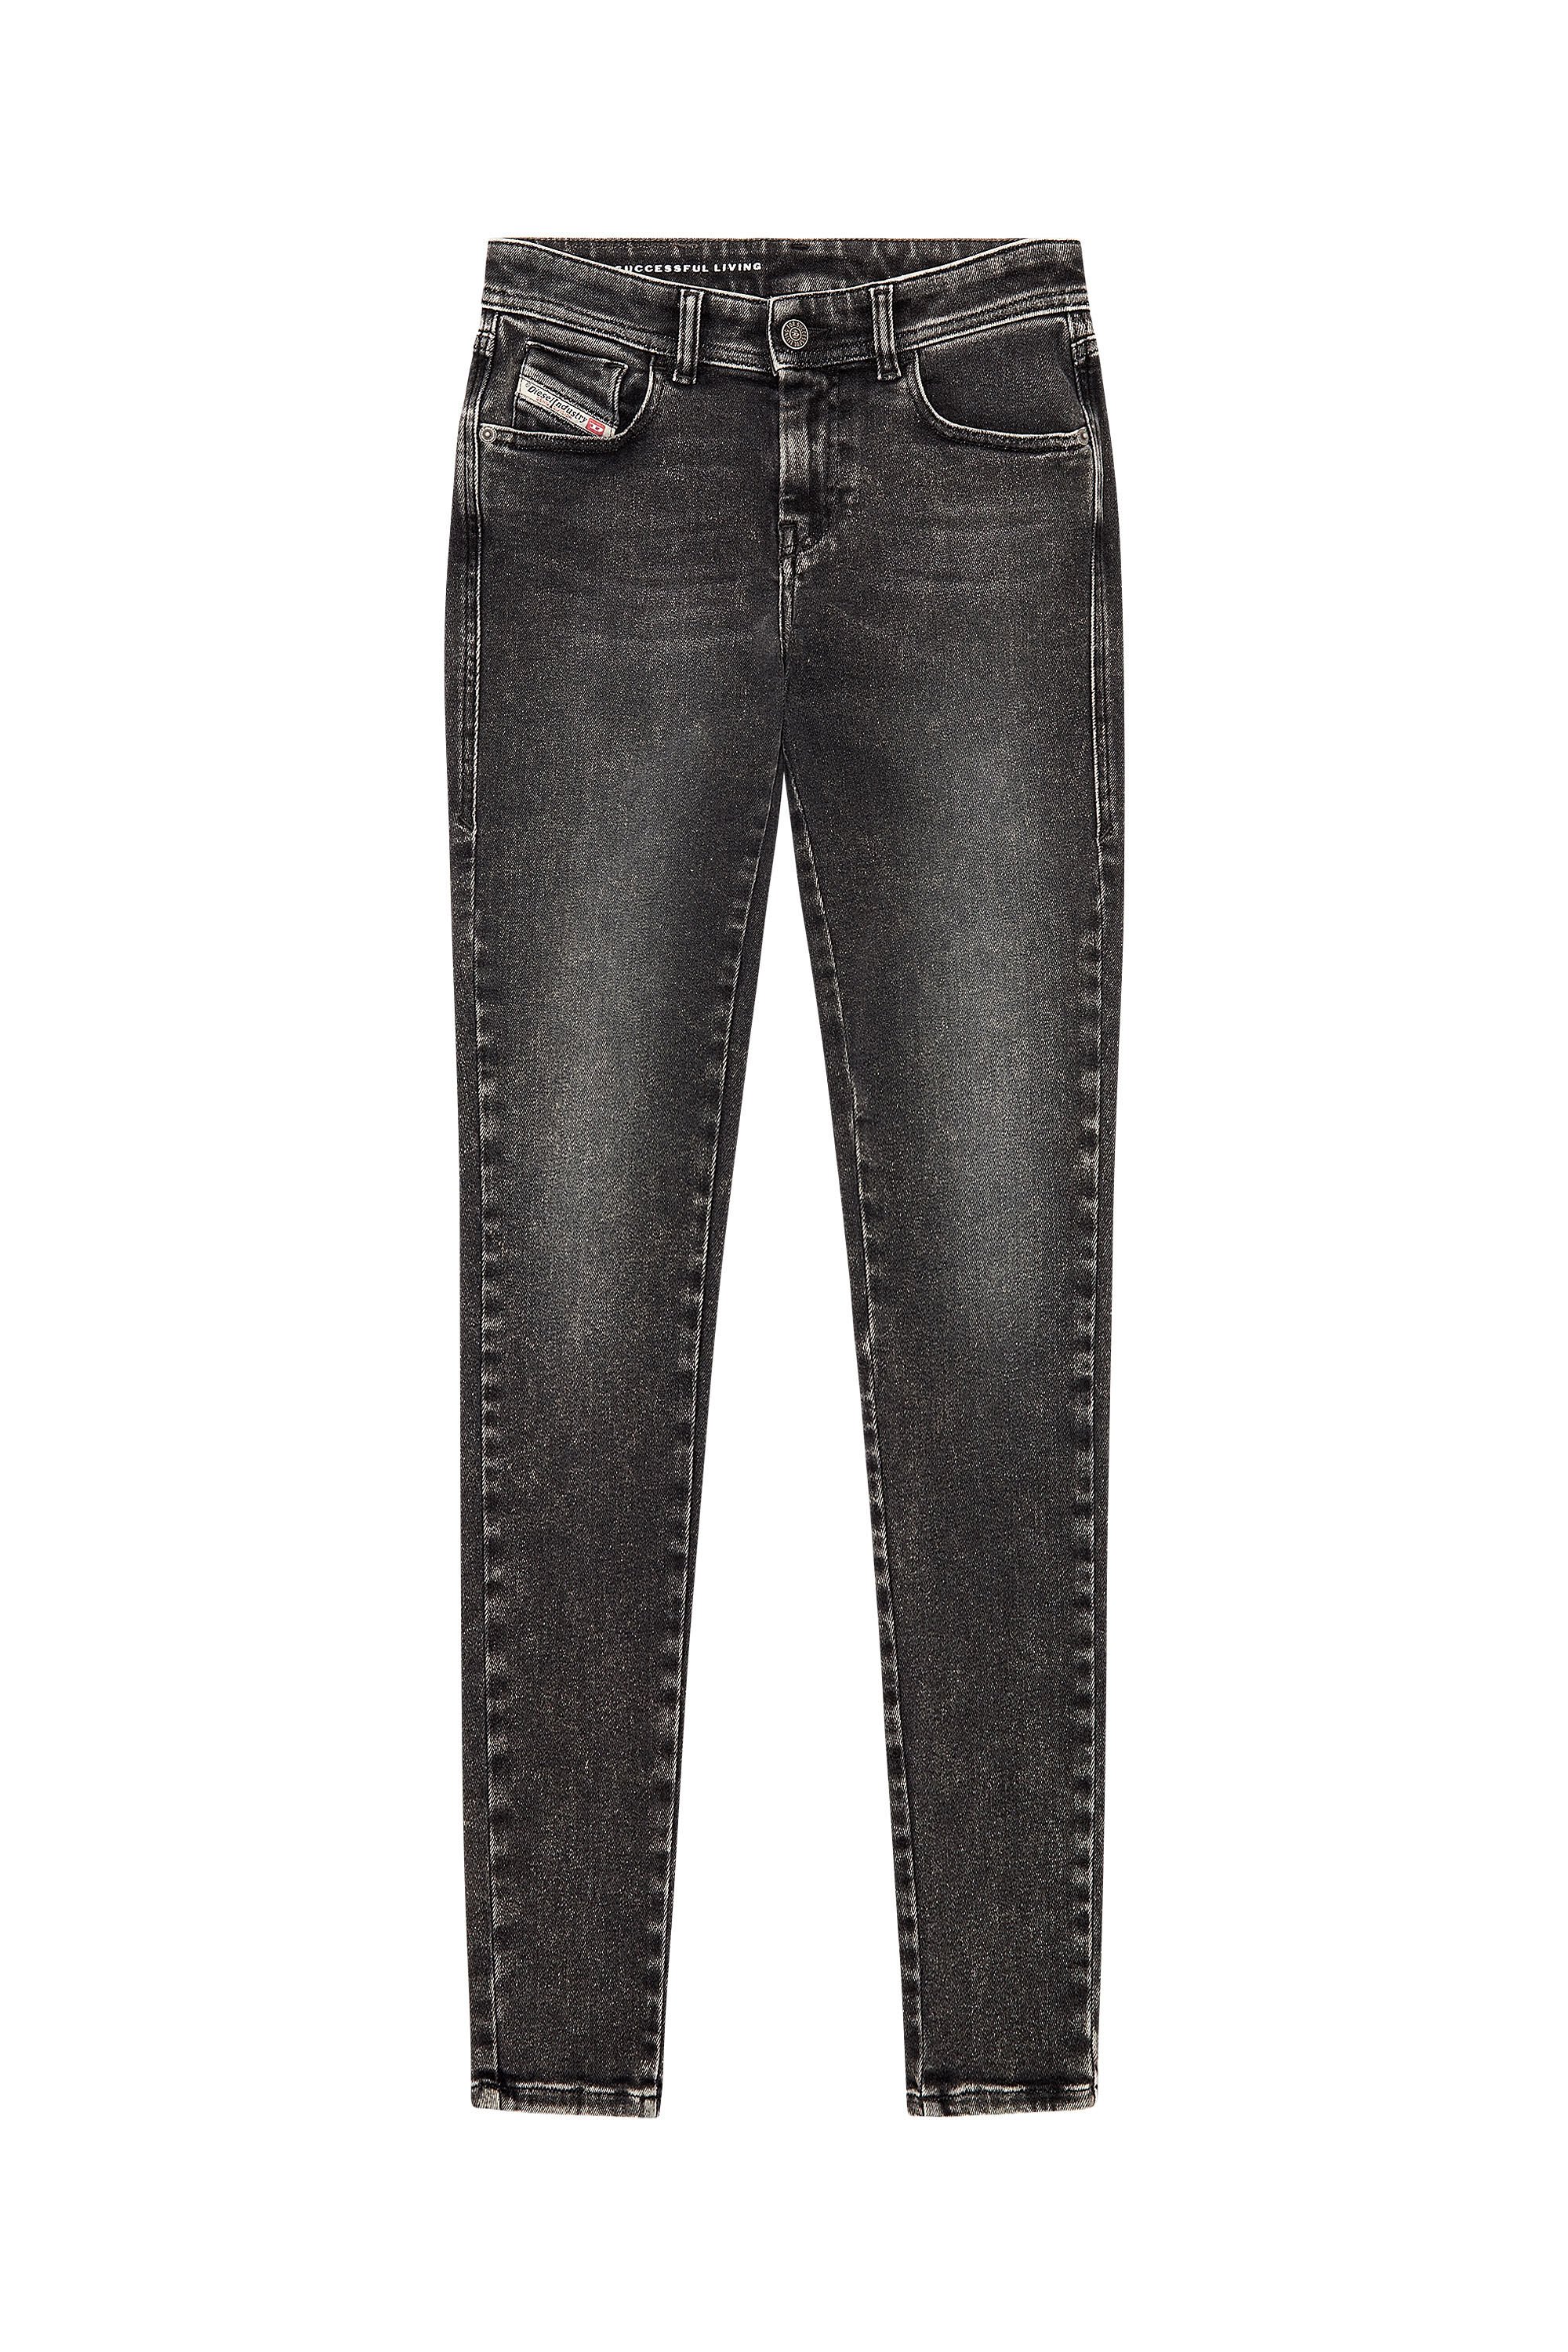 Diesel - Woman Super skinny Jeans 2017 Slandy 09H88, Black/Dark grey - Image 2